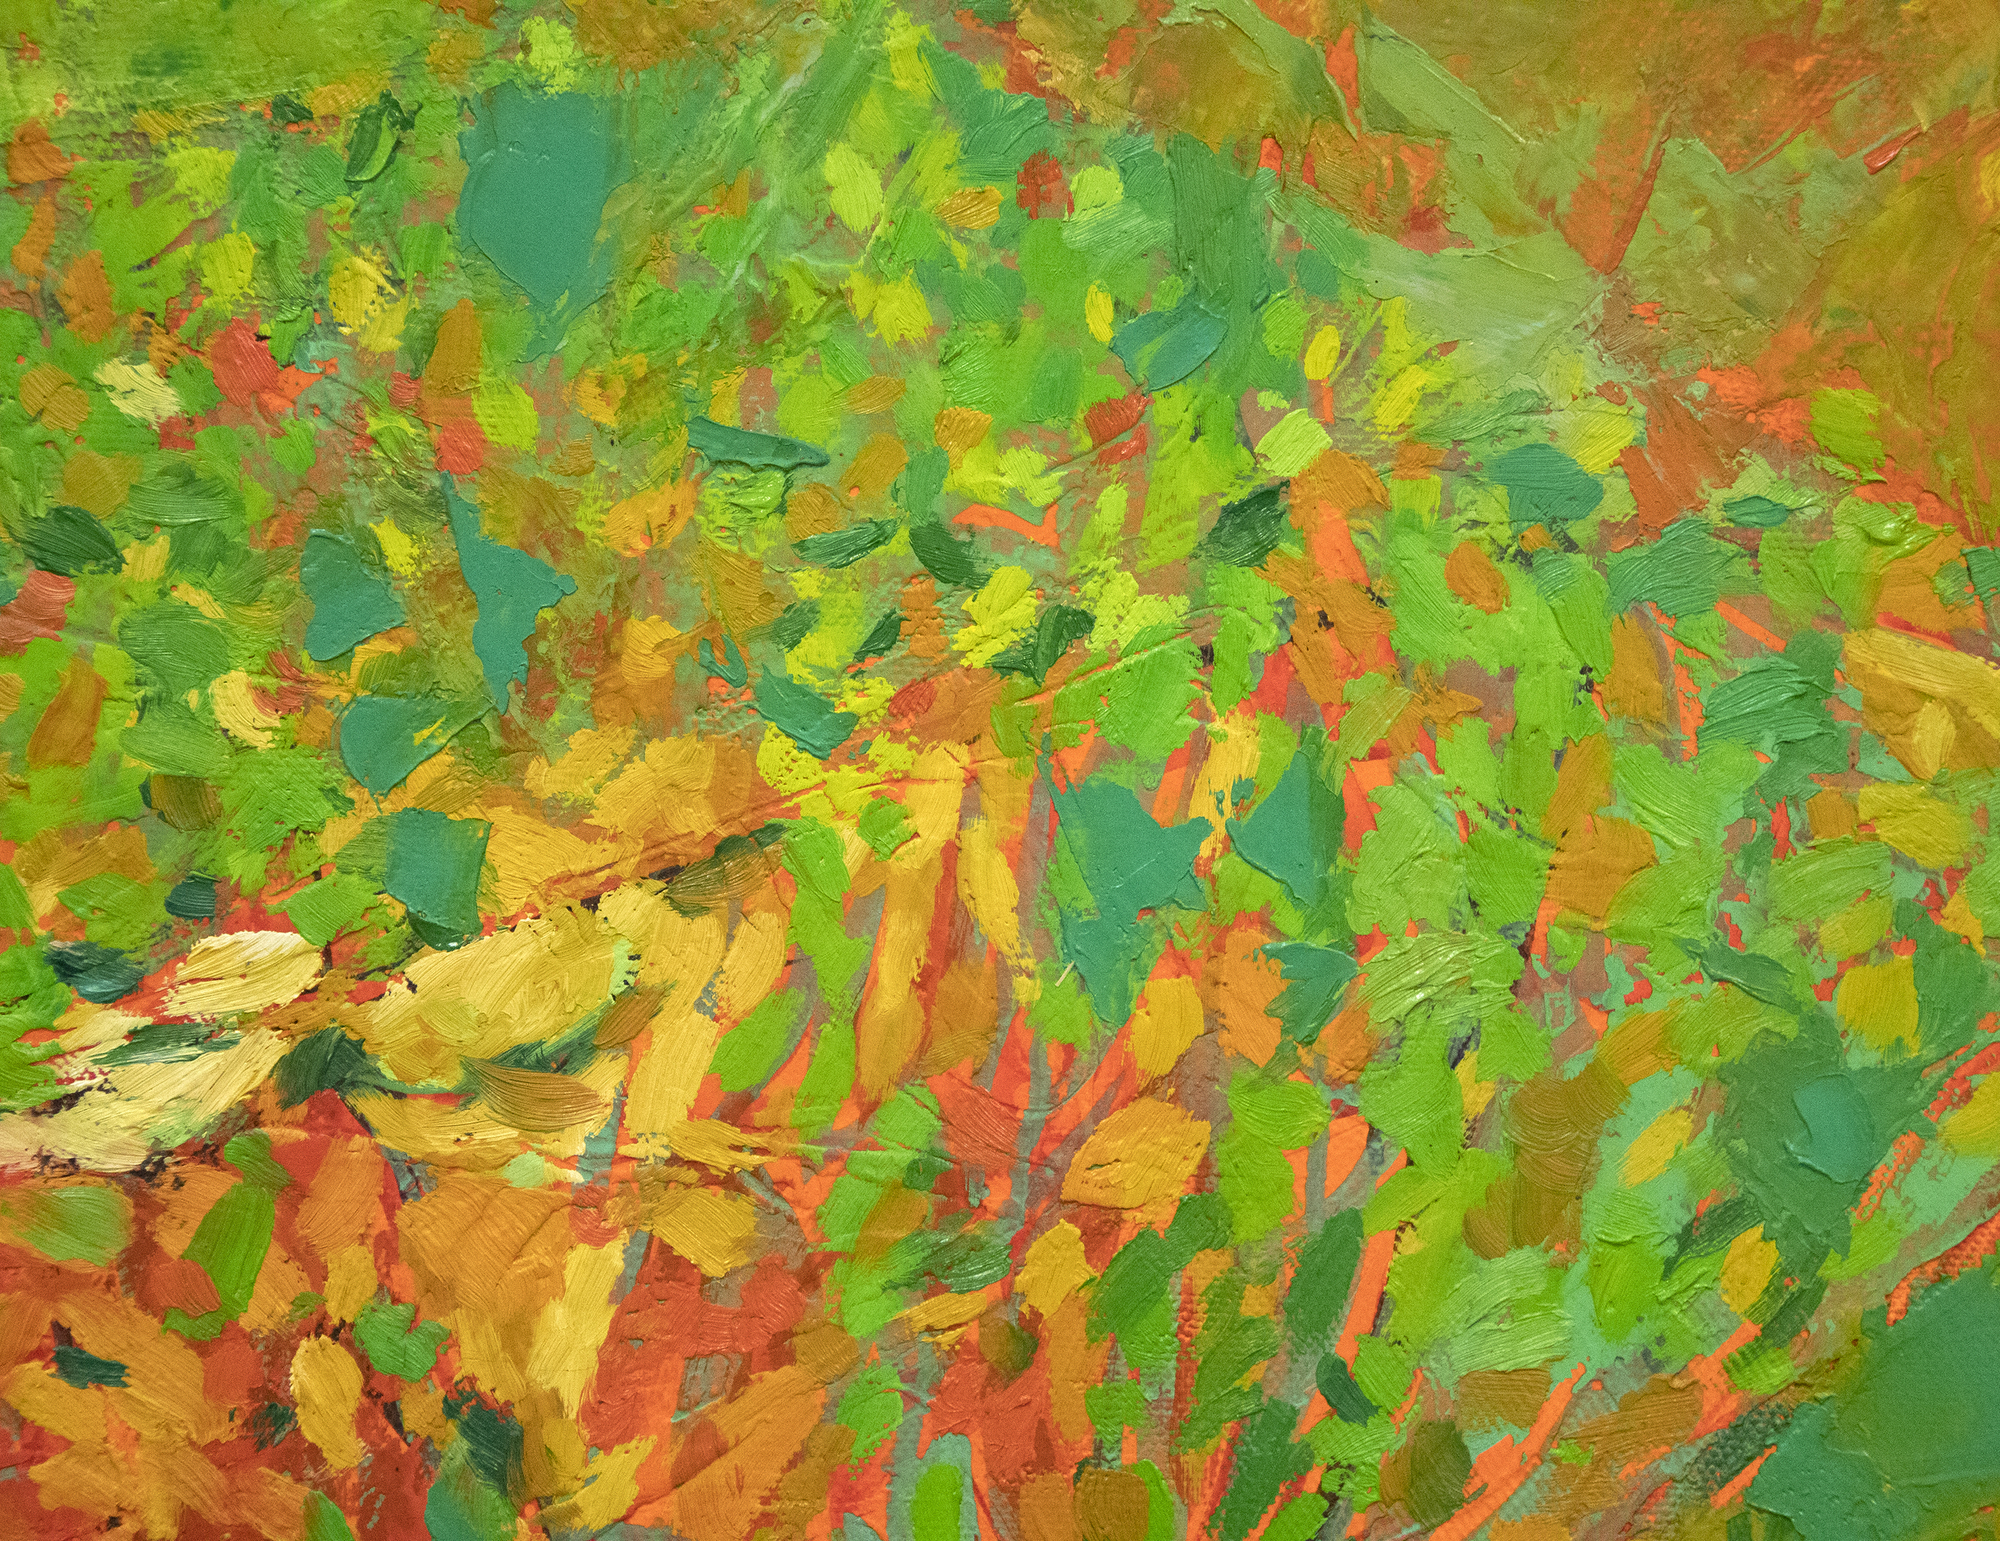 JAE KON PARK - Untitled - oil on canvas - 38 1/4 x 51 1/2